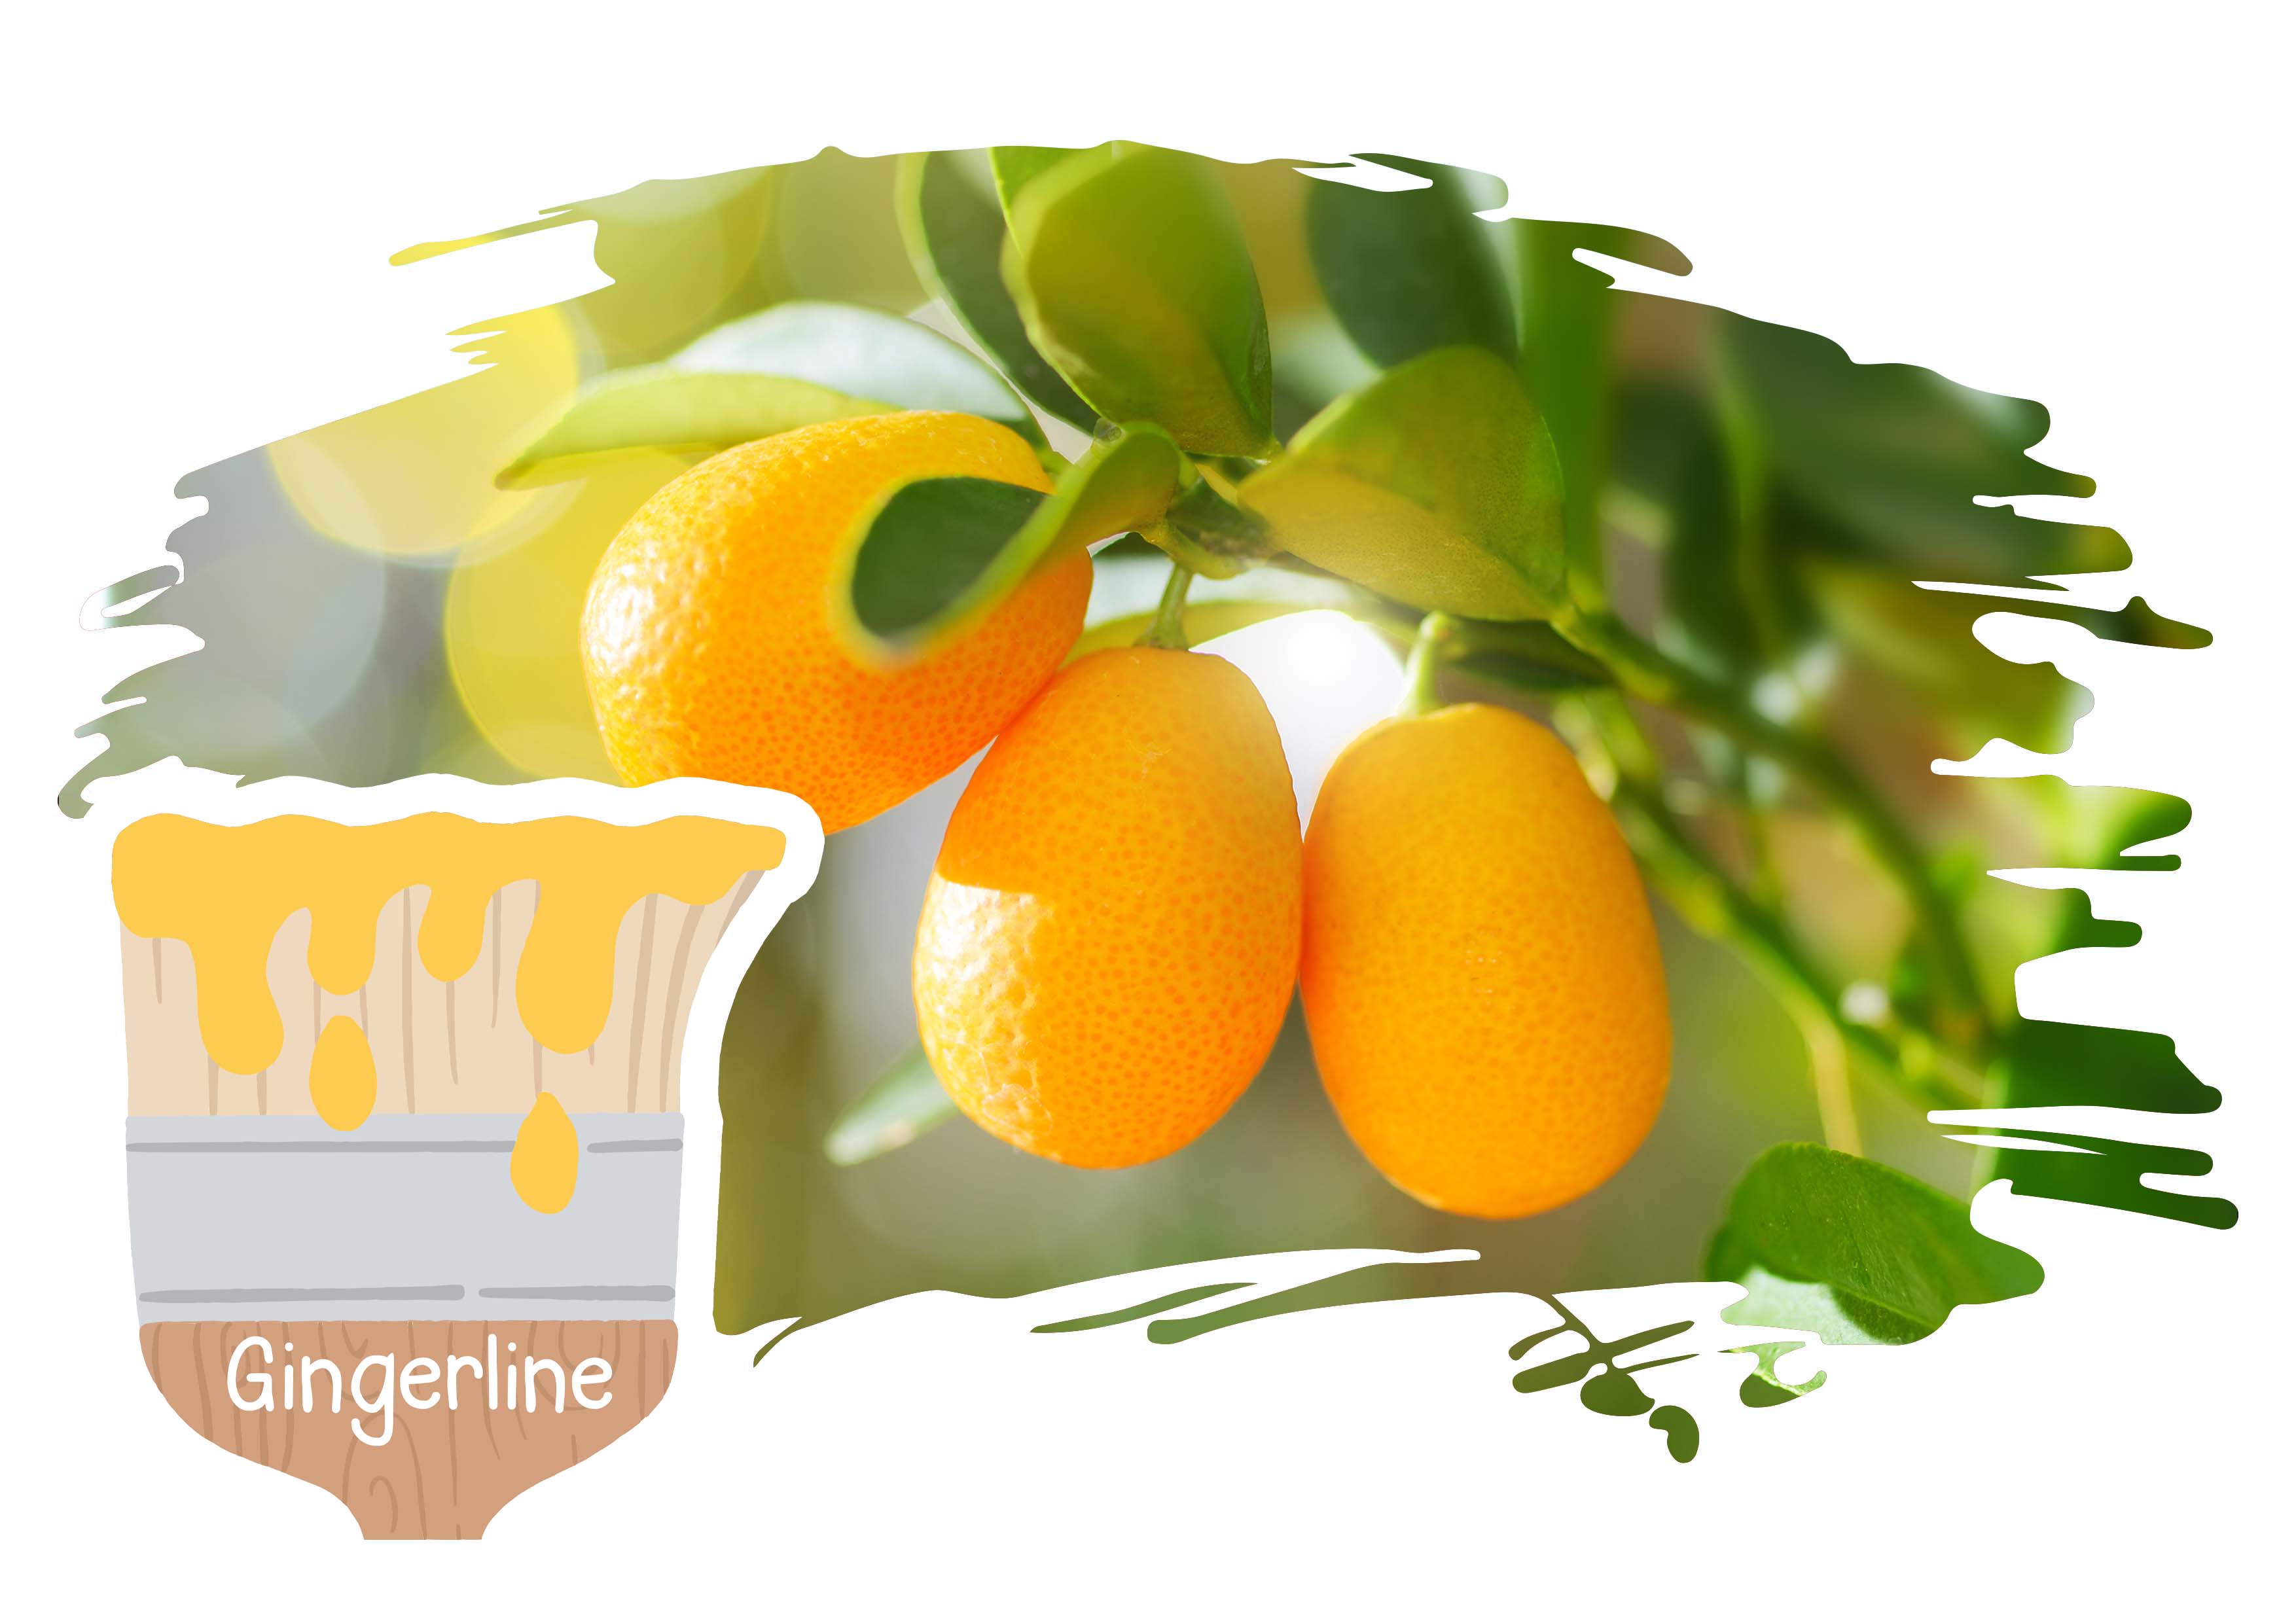 Gingerline, Kumquats